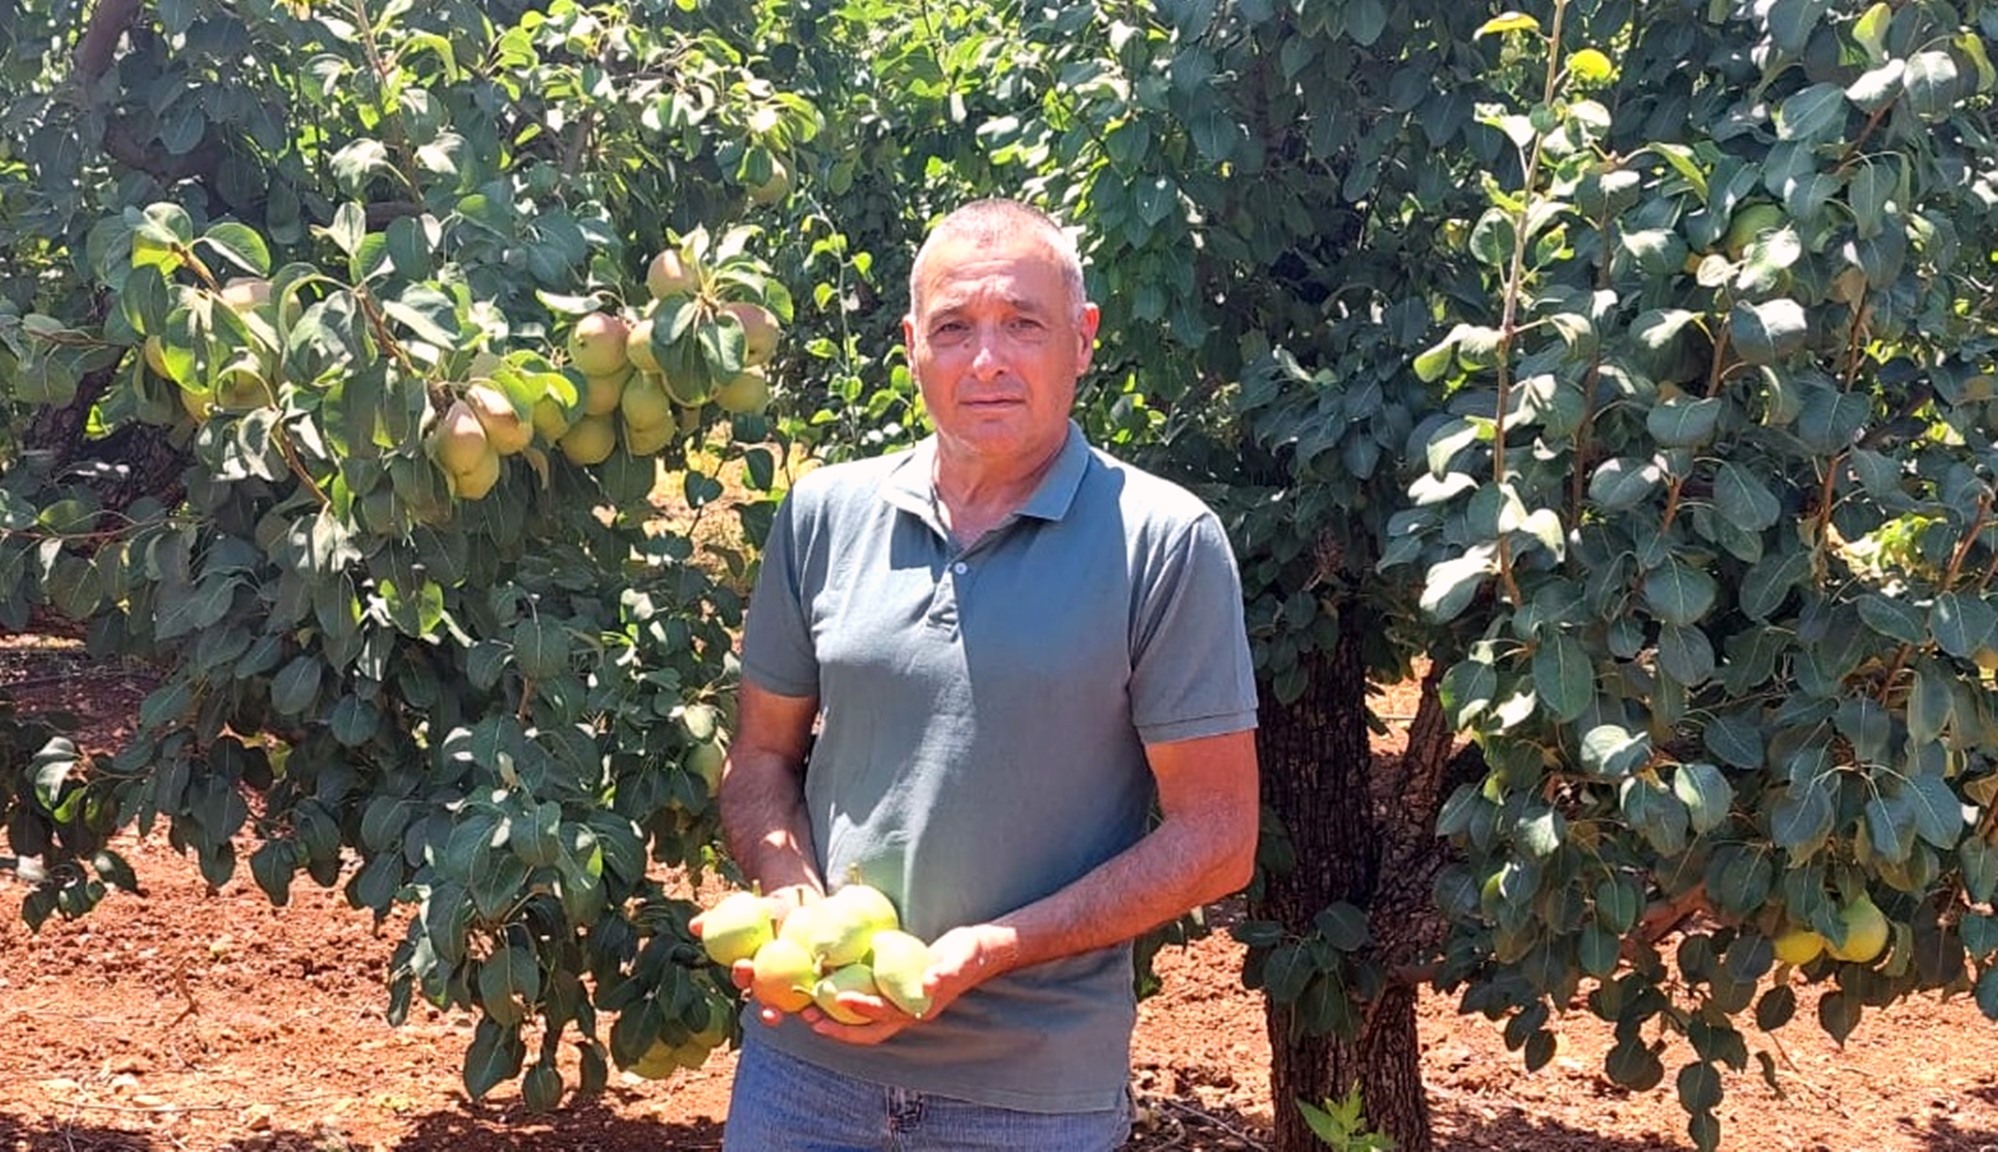 ארגון מגדלי הפירות בישראל: החל קטיף האגס במטעי הגליל העליון